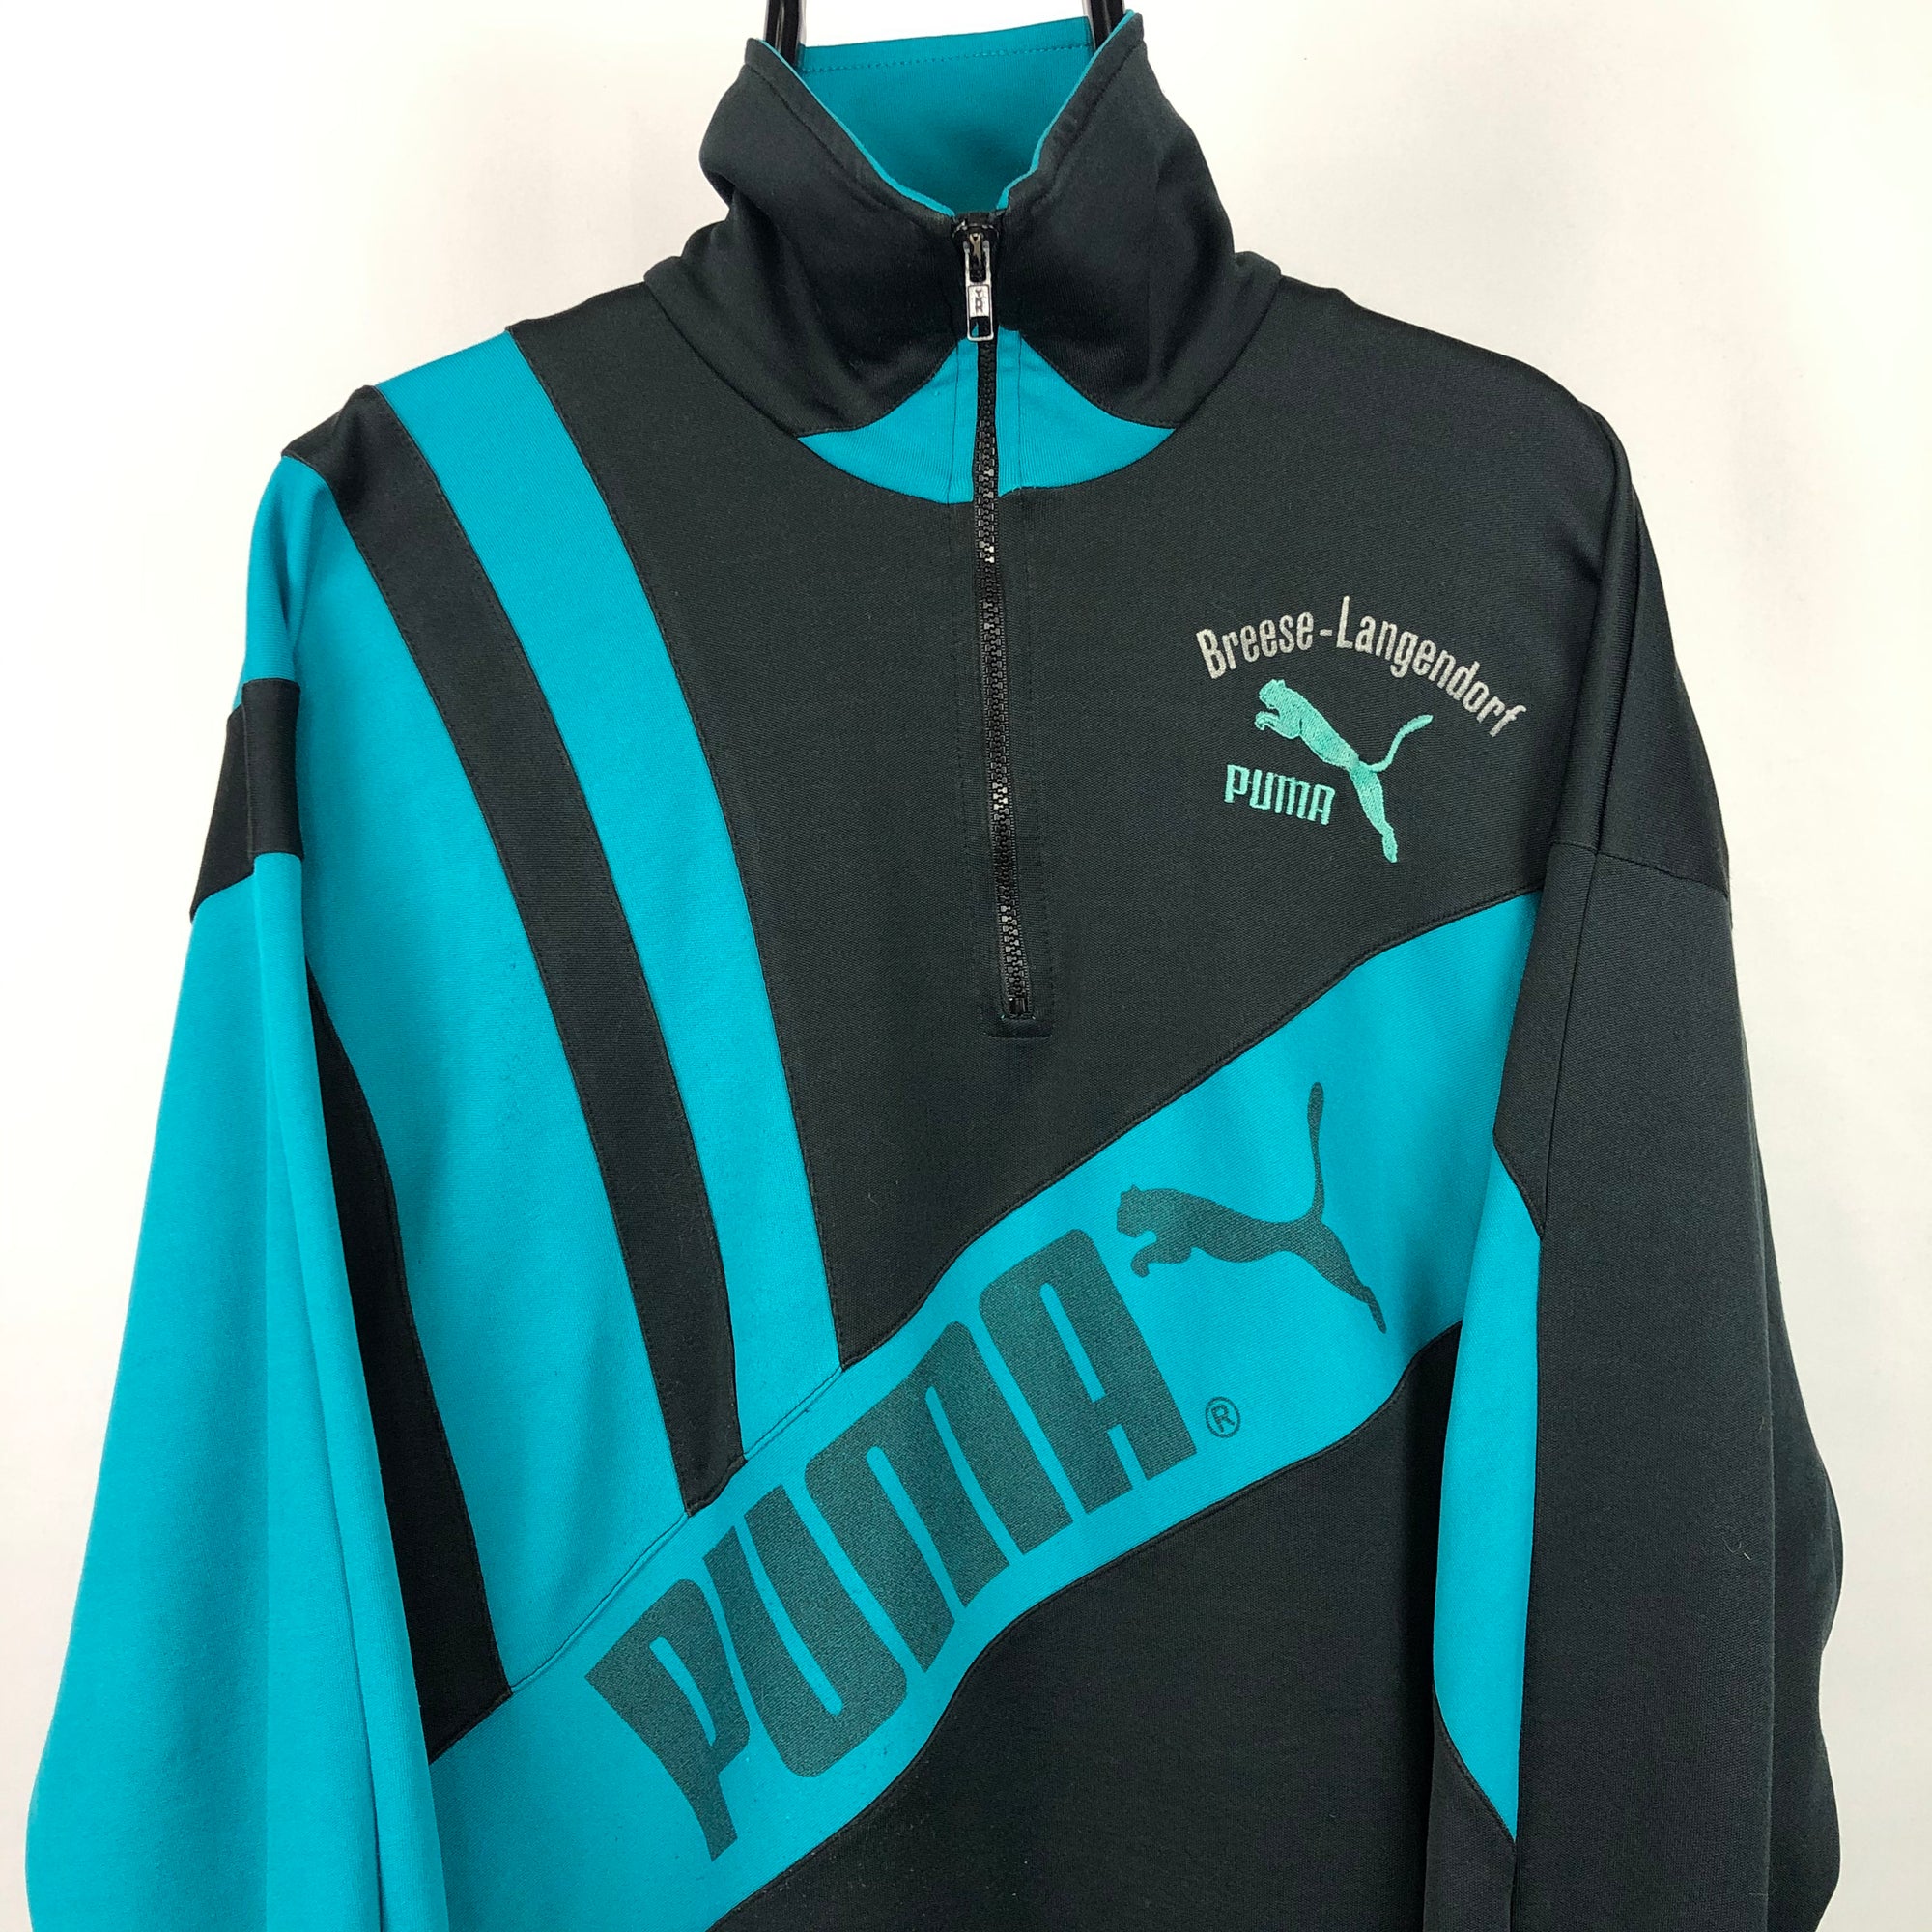 Vintage 90s Puma Track Jacket in Teal/Black - Men's Large/Women's XL